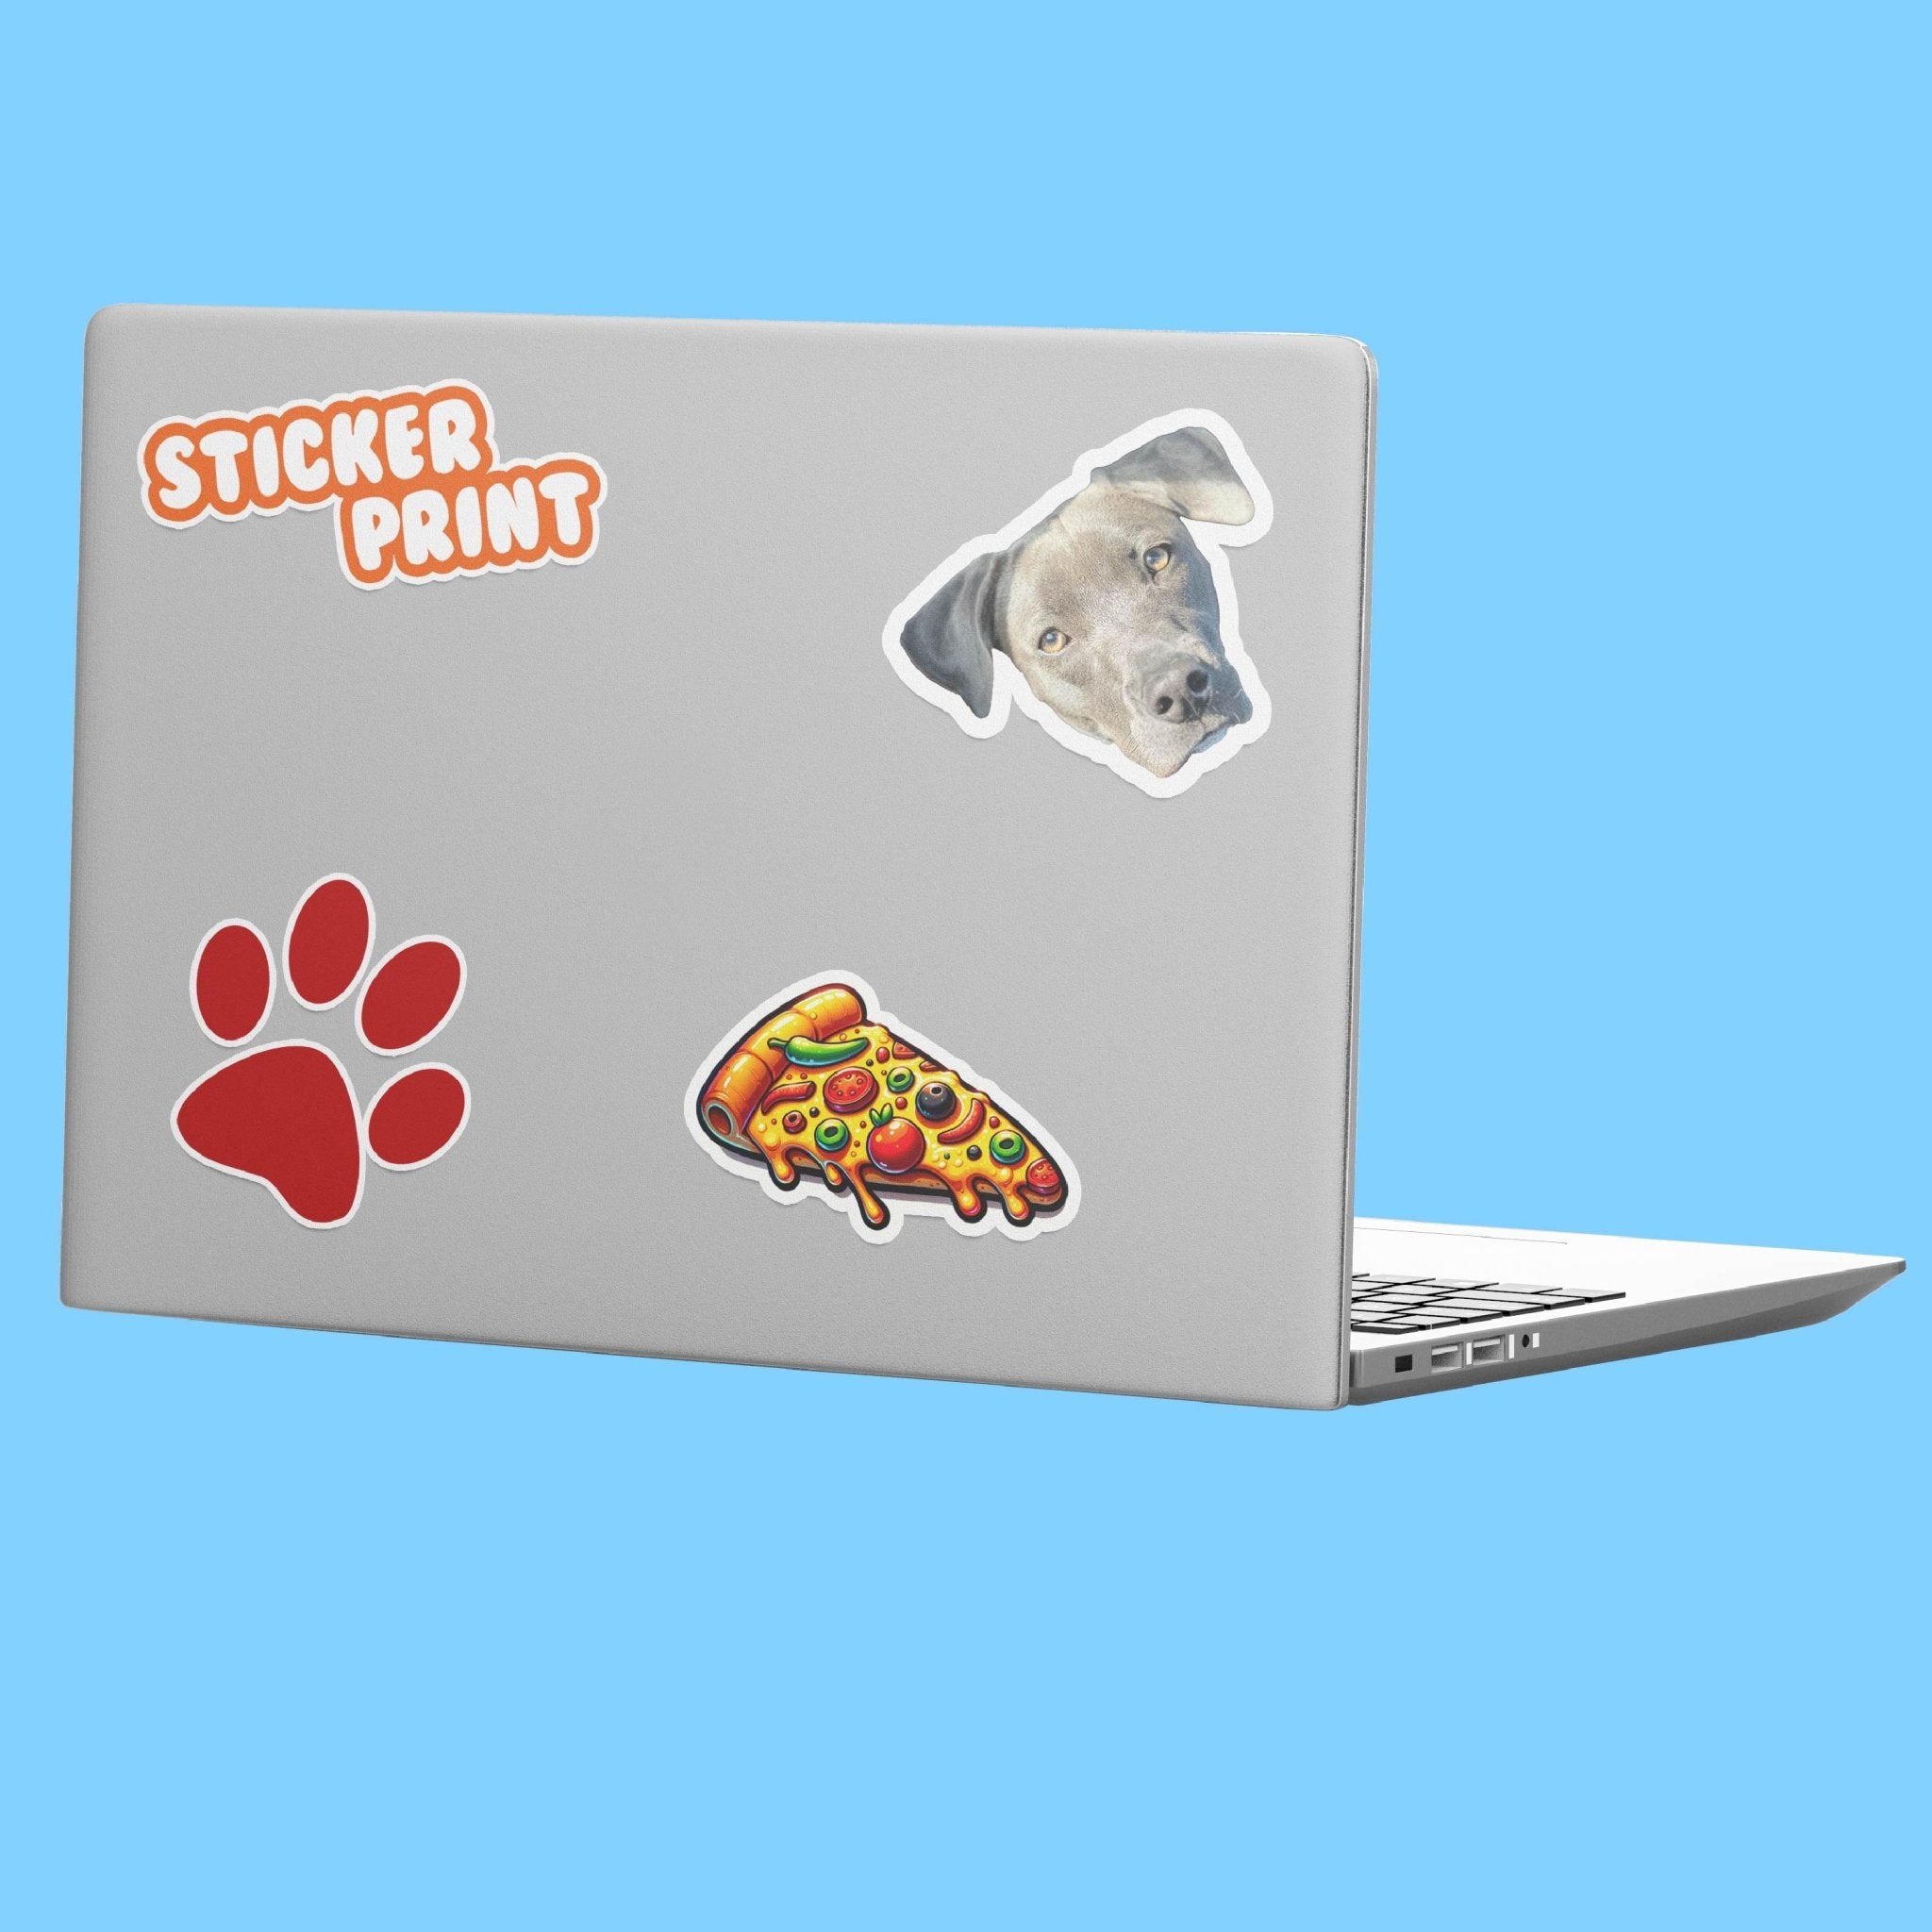 http://stickerprint.com/cdn/shop/products/laptop-stickers-299100.jpg?v=1702777868&width=2048